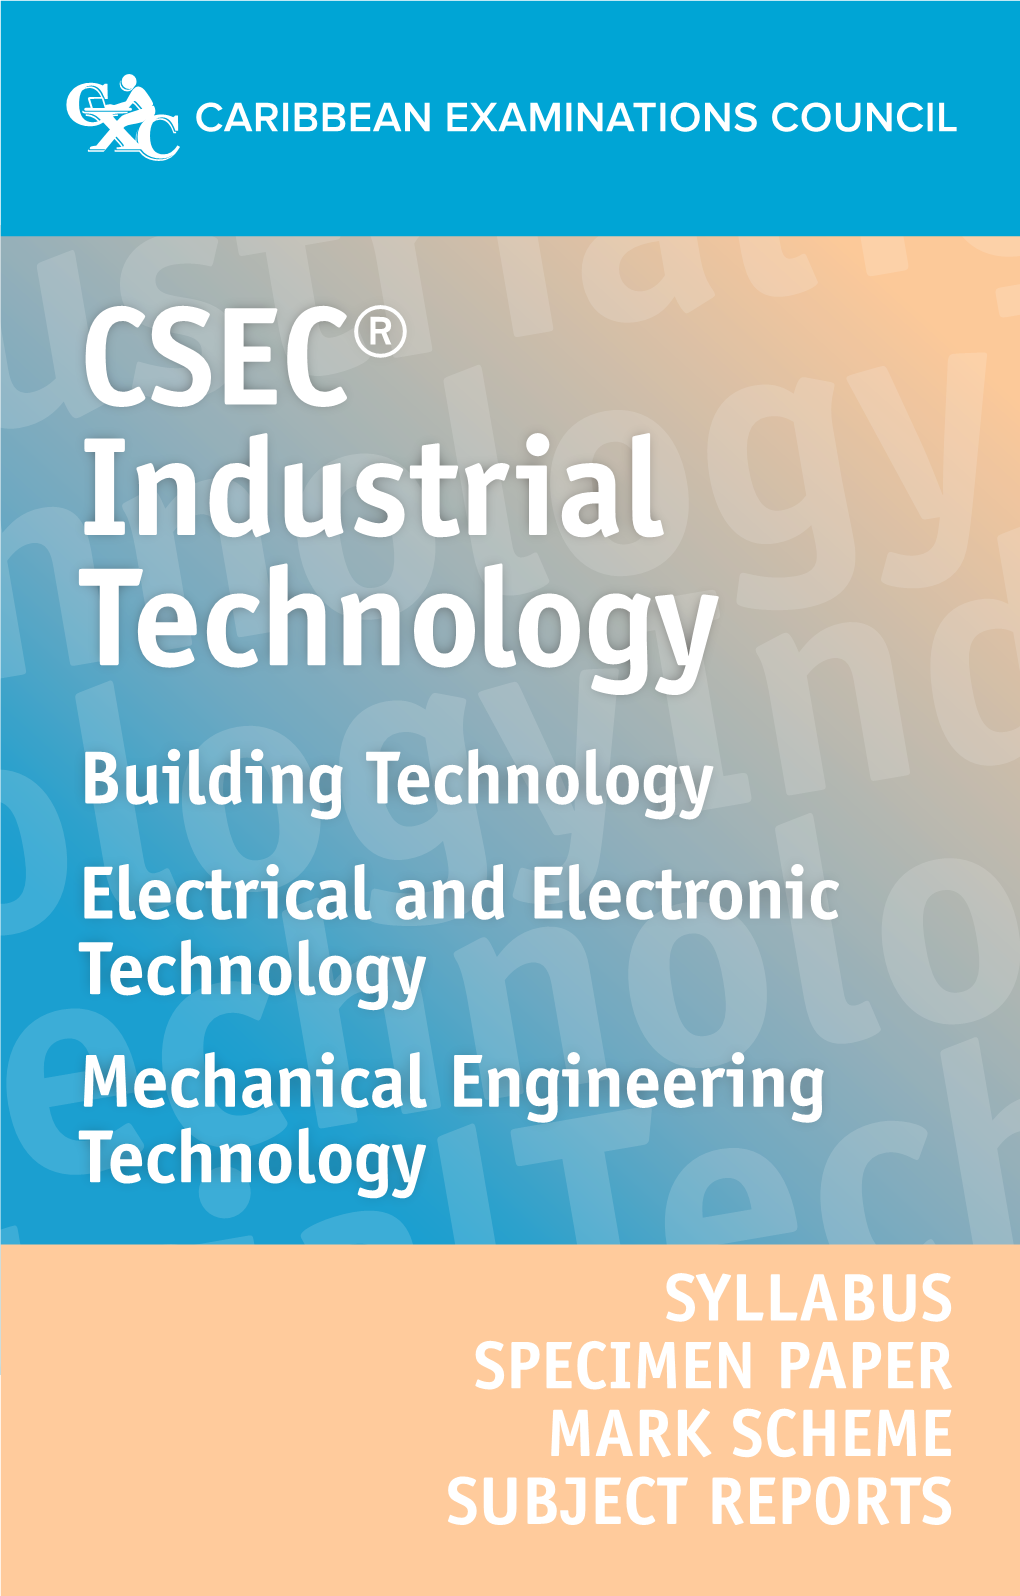 CSEC® Industrial Technology Syllabus Extract 5